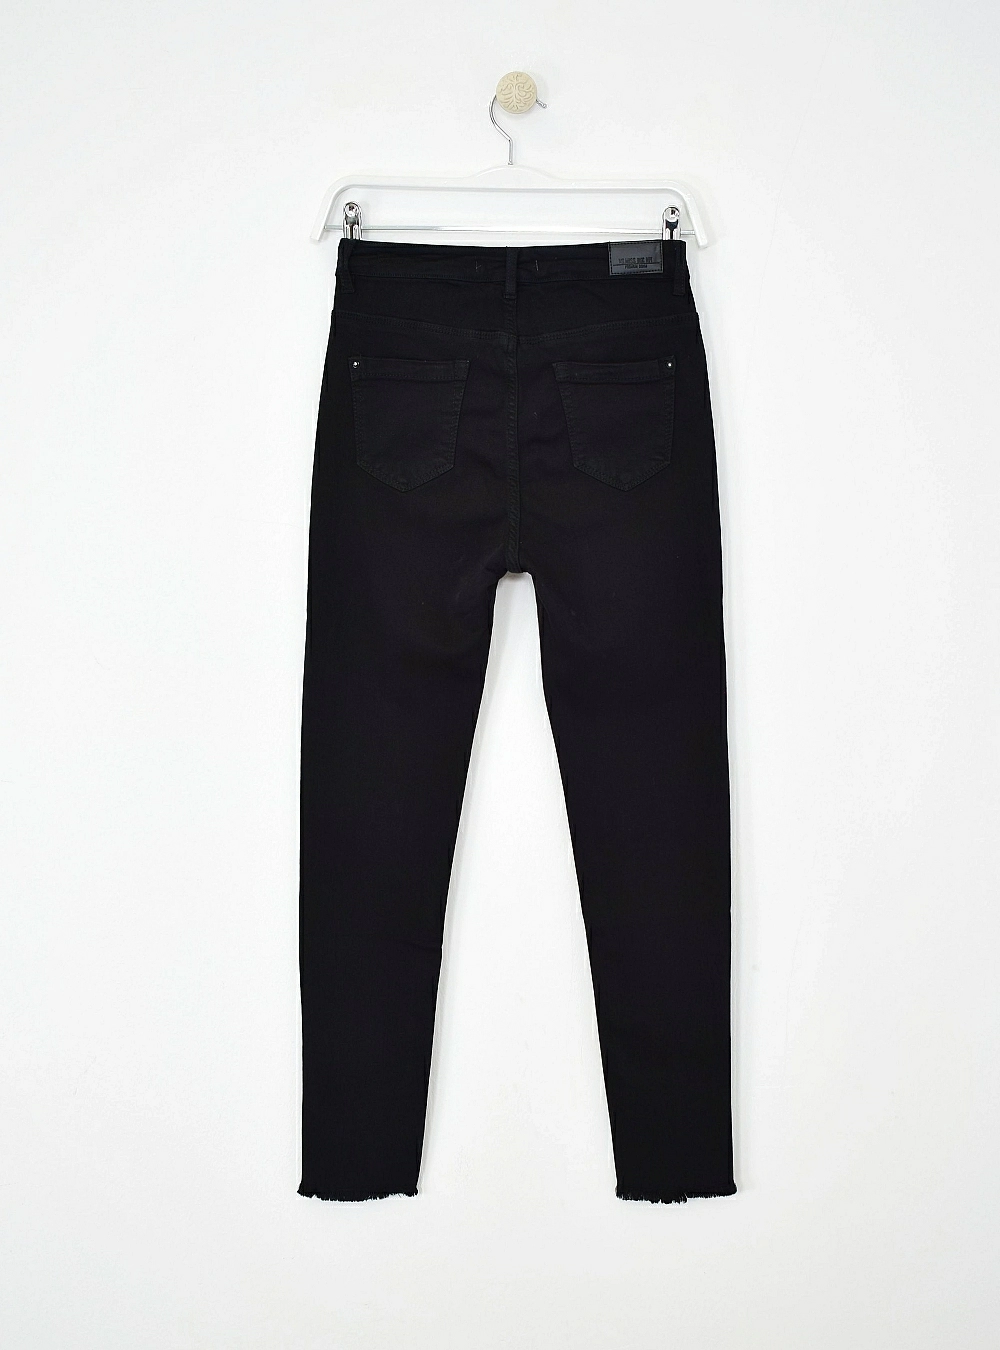 Jeans hilos black